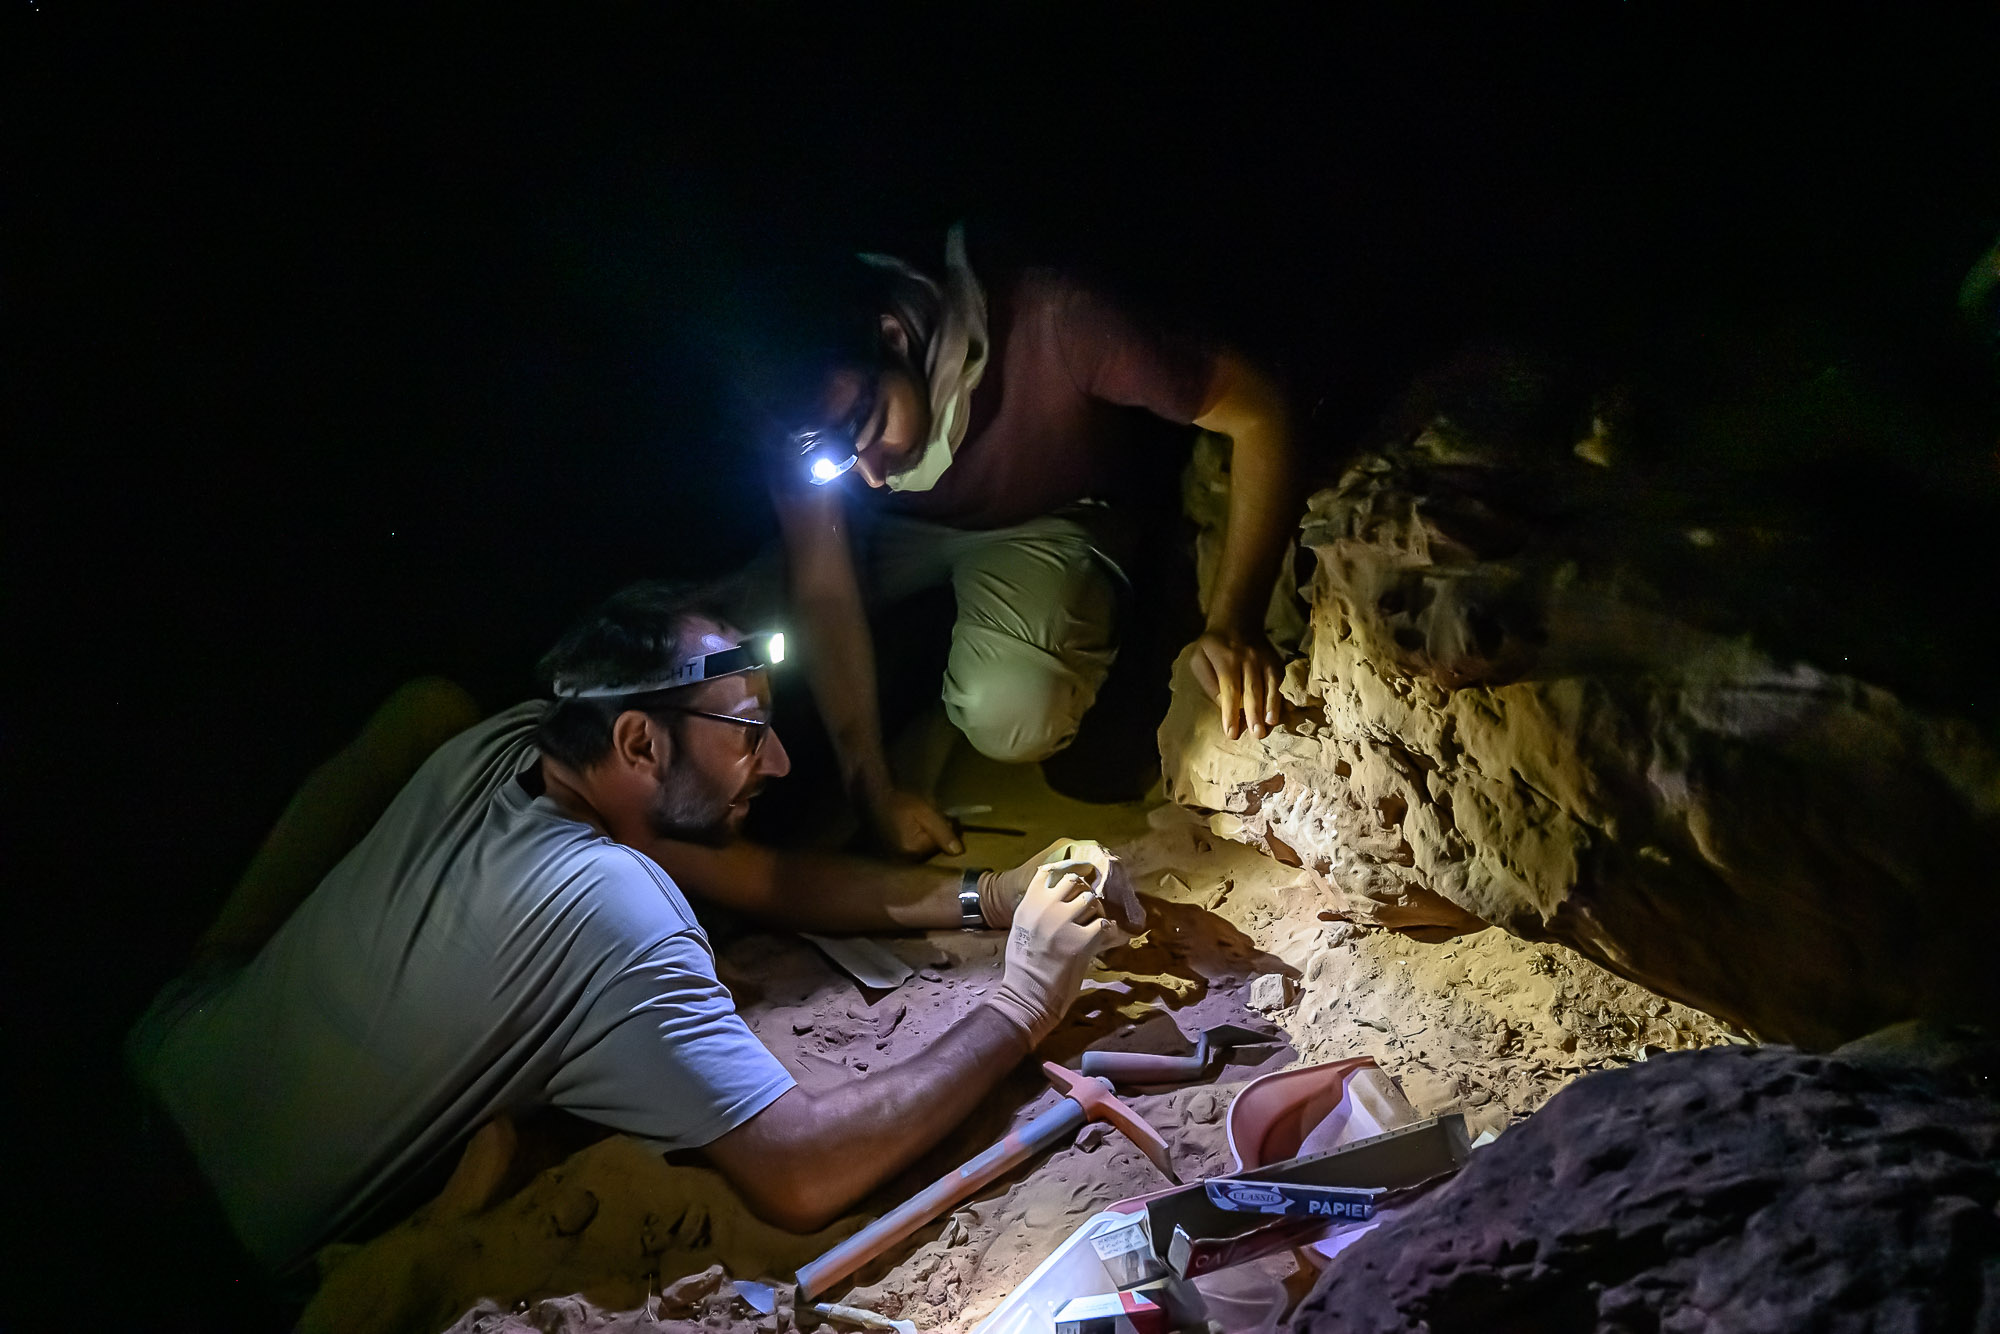 Arabie Saoudite, Al Jawf, Sakaka, Camel Site. Prélévement d'échantillon sur   un rocher provenant d'un des massifs  sculptés afin d'en daté la chute par la technique dite OSL (luminescence stimulée optiquement) . Ce procédé qui consiste à prélever une partie de la roche non exposée à la lumière du jour permet de recueillir et de mesurer en laboratoire la lumière fossile datant d'avant l'évènement, quand le bloc rocheux était encore en place sur le massif. Ce prélèvement doit se faire dans l'obscurité. Sur cette photographie les scientifiques peuvent utiliser une lampe à lumière blanche car ils prélèvent un échantillon témoin exposé à la lumière du jour contemporaine afin de comparer sa photoluminescence à l'échantillon à dater.

Saudi Arabia, Al Jawf, Sakaka, The Camel Site. The prehistorian Remy Crassard and the archeologist Guillaume Charloux are taking samples from a rock from one of the sculpted massifs in order to date the fall by the so-called OSL technique (optically stimulated luminescence). This process, which consists of taking a part of the rock not exposed to daylight, enable to collect and measure, in the laboratory, the fossil light that it stored before its fall. This sample must be taken in the dark. In this photograph, scientists can use a white light lamp as they take a control sample exposed to contemporary daylight in order to compare its photoluminescence with the sample to be dated.